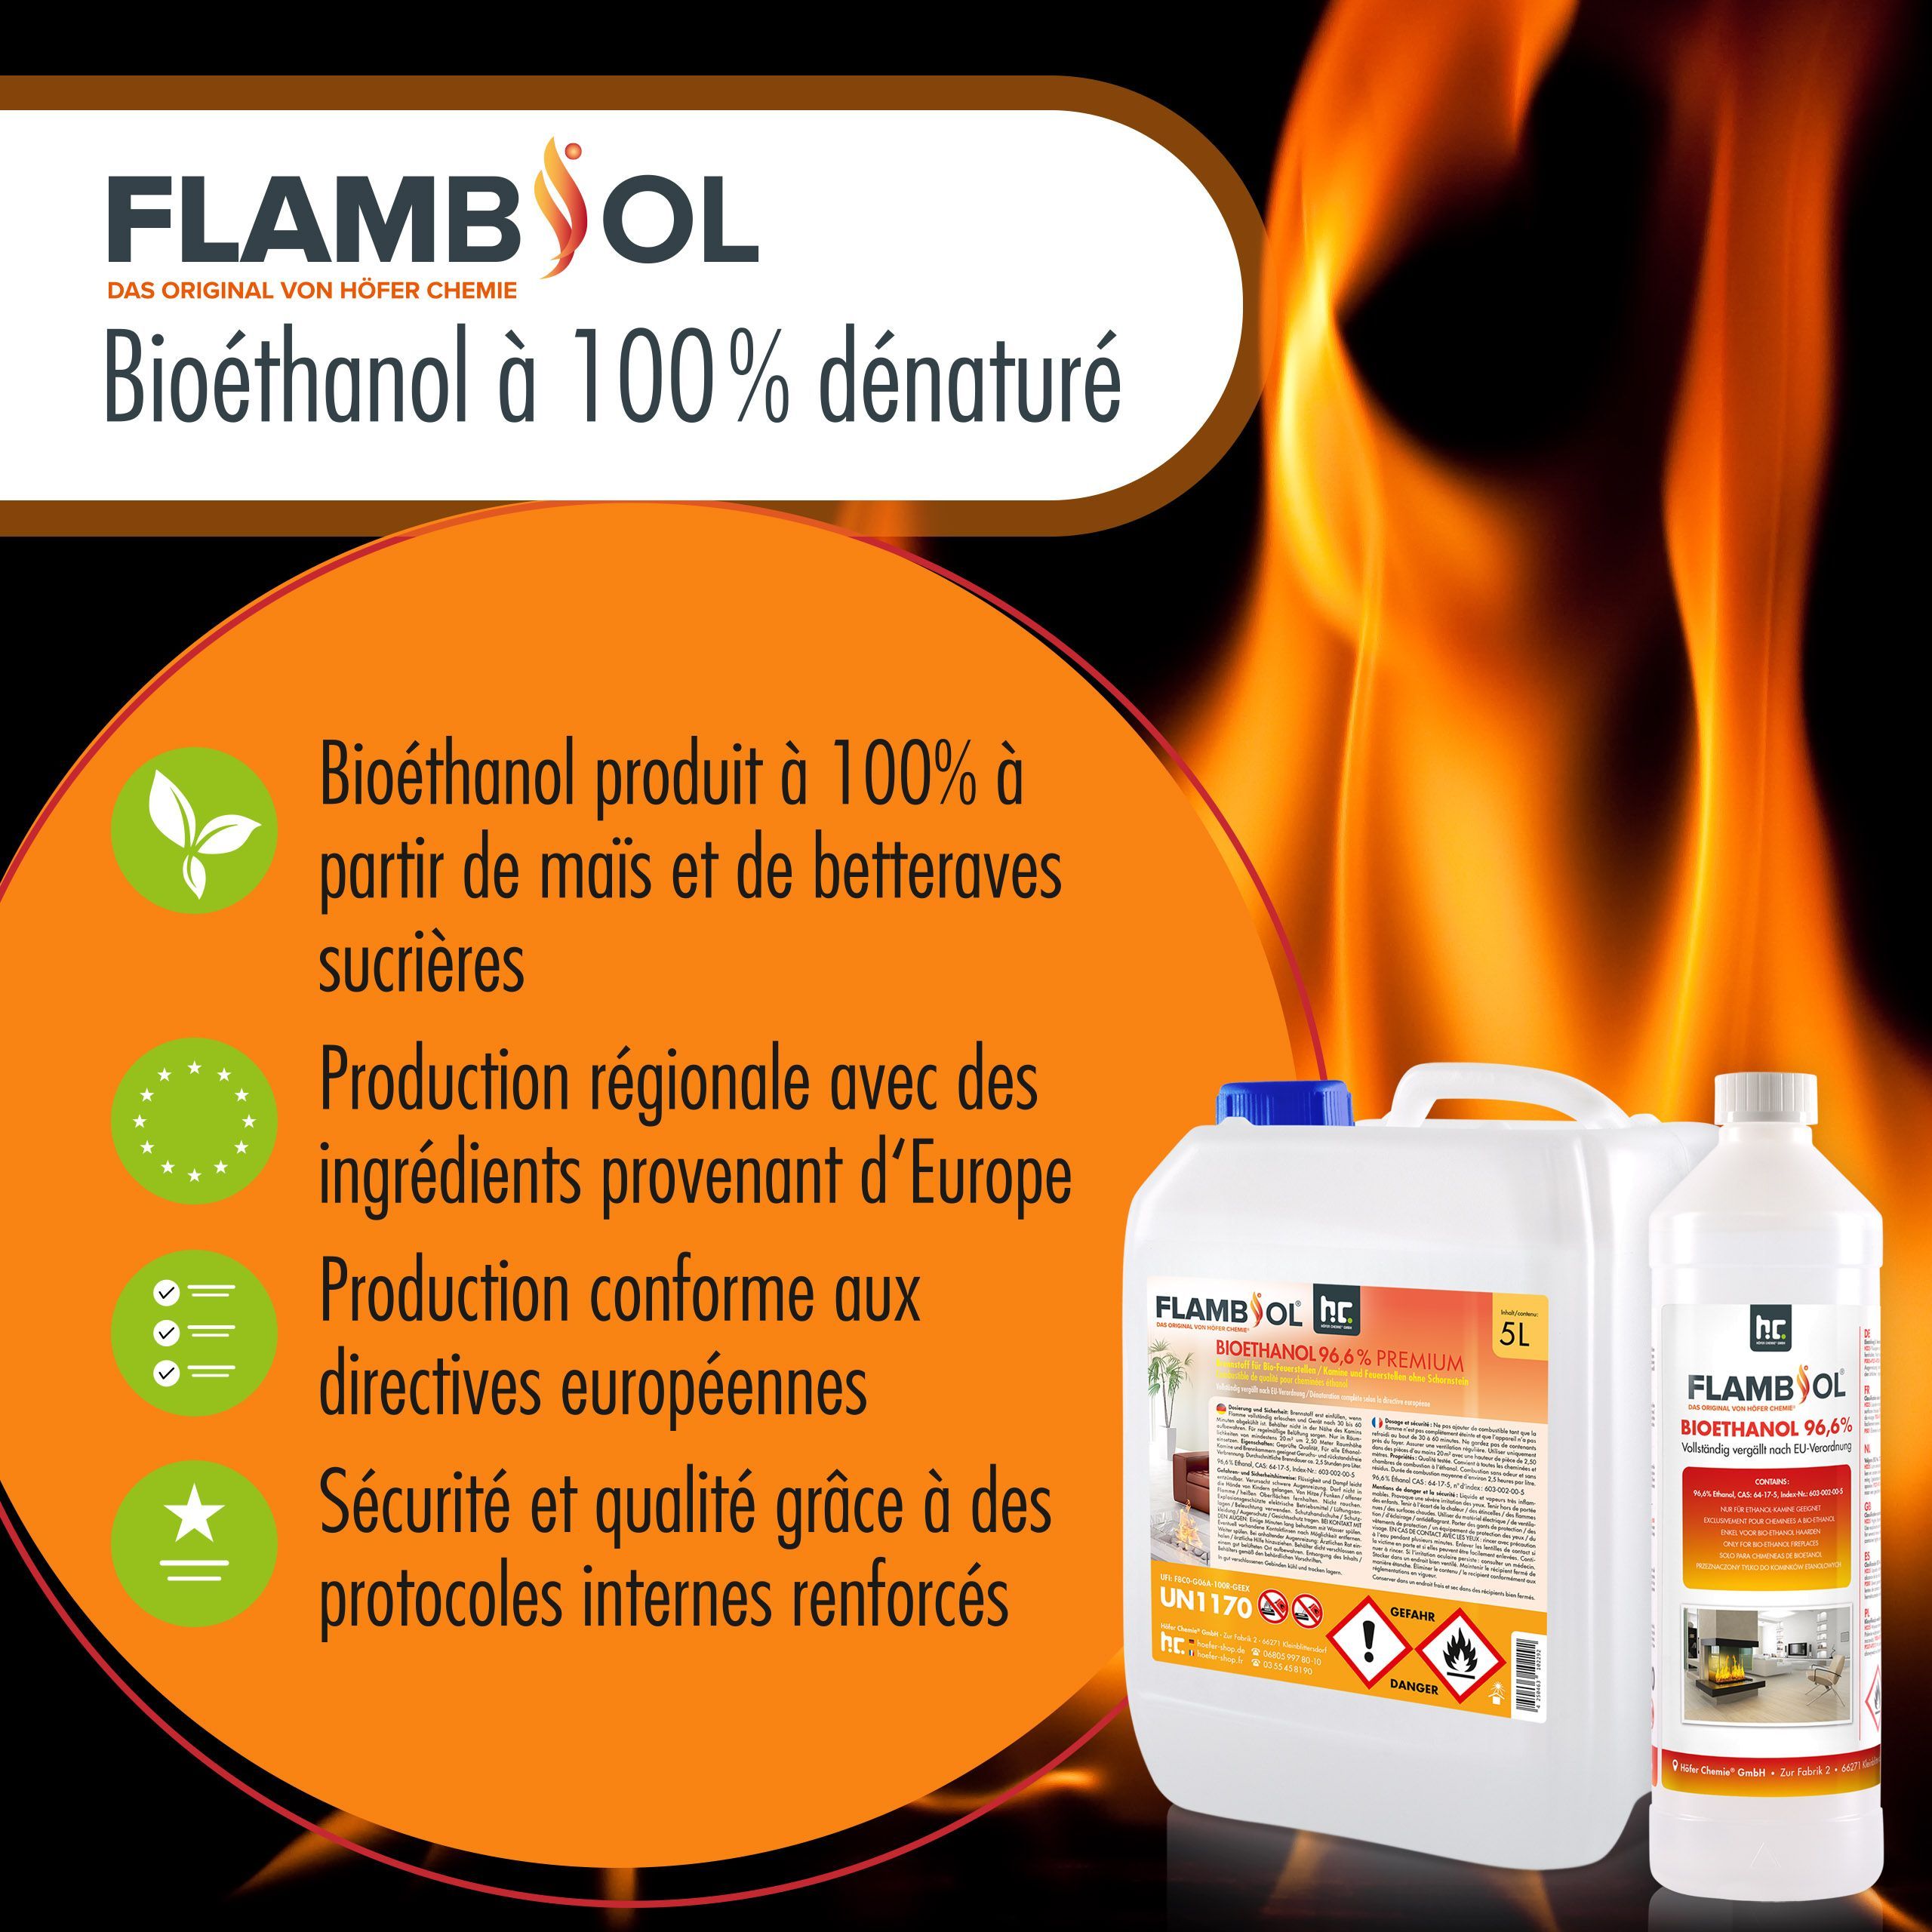 10 L FLAMBIOL® Bioéthanol 96,6% Premium pour cheminée à éthanol en bidons